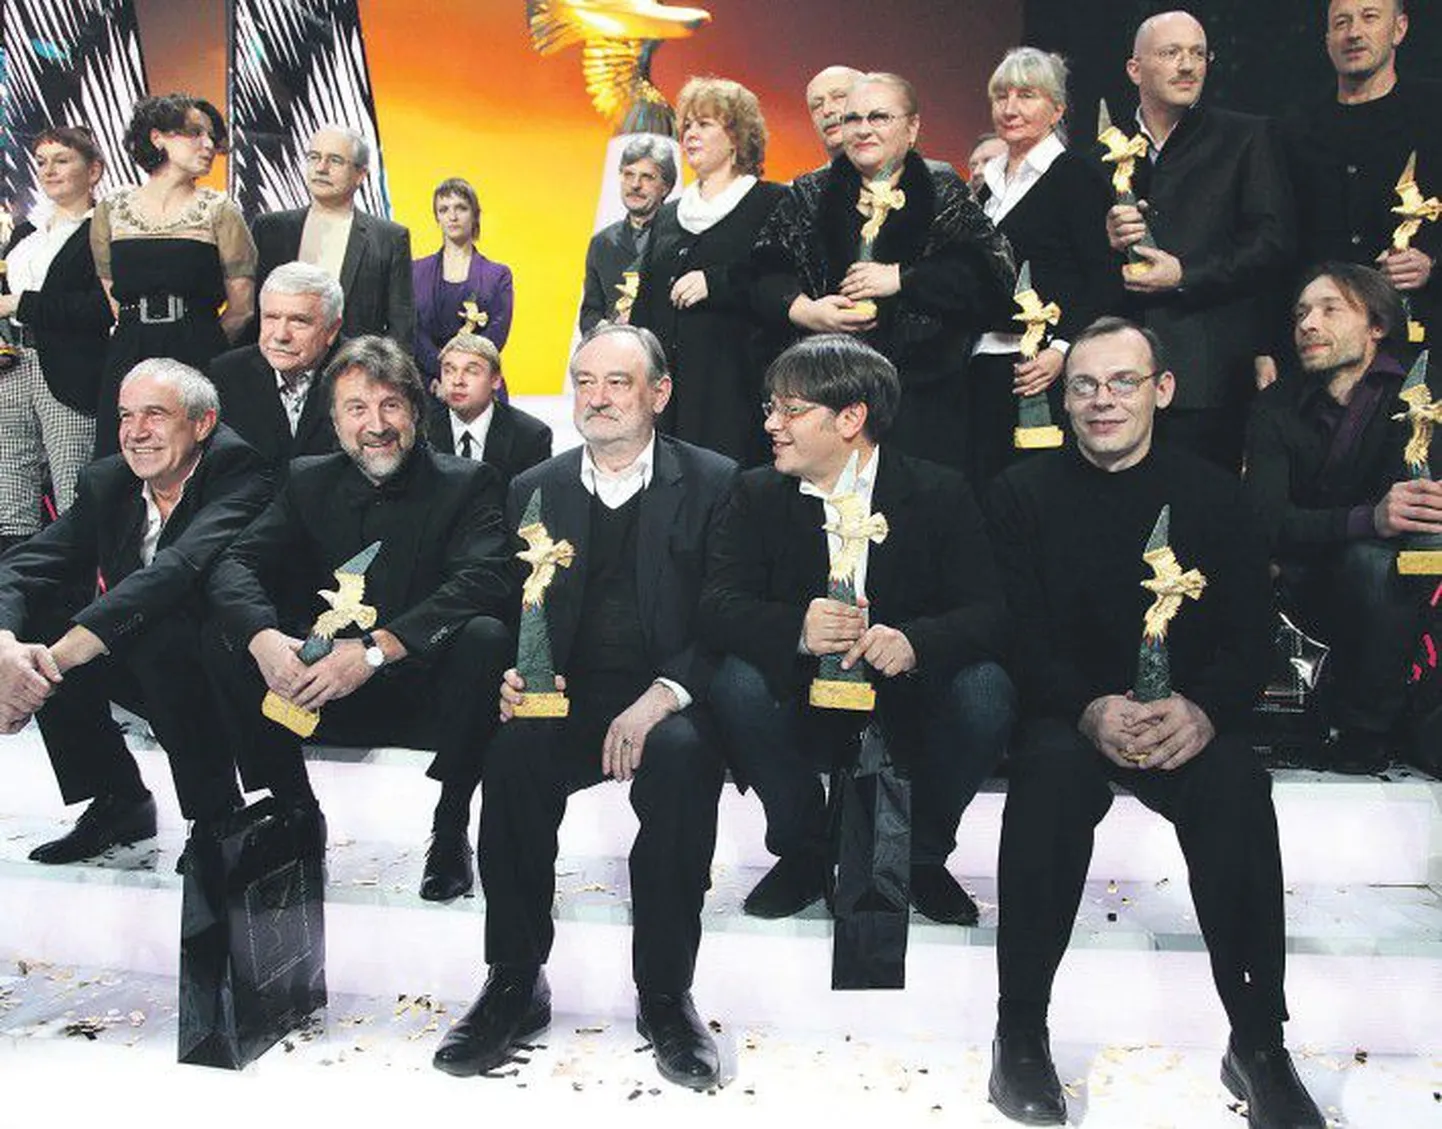 Лауреаты национальной премии в области кинематографии «Золотой орел» за 2009 год в павильоне «Мосфильма».